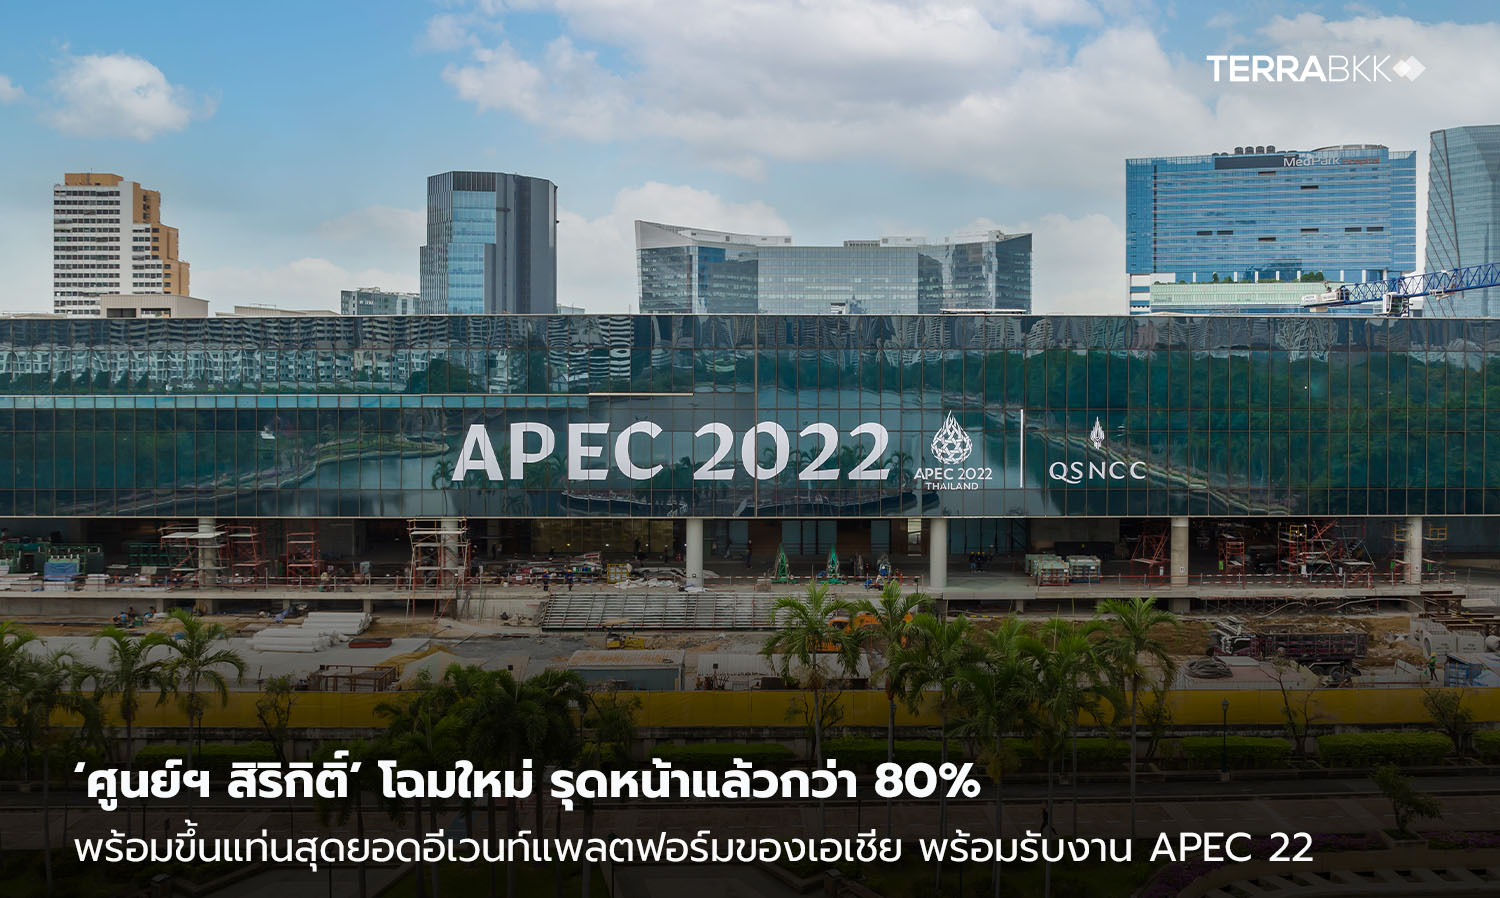 ‘ศูนย์ฯ สิริกิติ์’ โฉมใหม่ รุดหน้าแล้วกว่า 80% พร้อมขึ้นแท่นสุดยอดอีเวนท์แพลตฟอร์มของเอเชีย  นับถอยหลังเปิดกันยายน 65 พร้อมรับงาน APEC 22